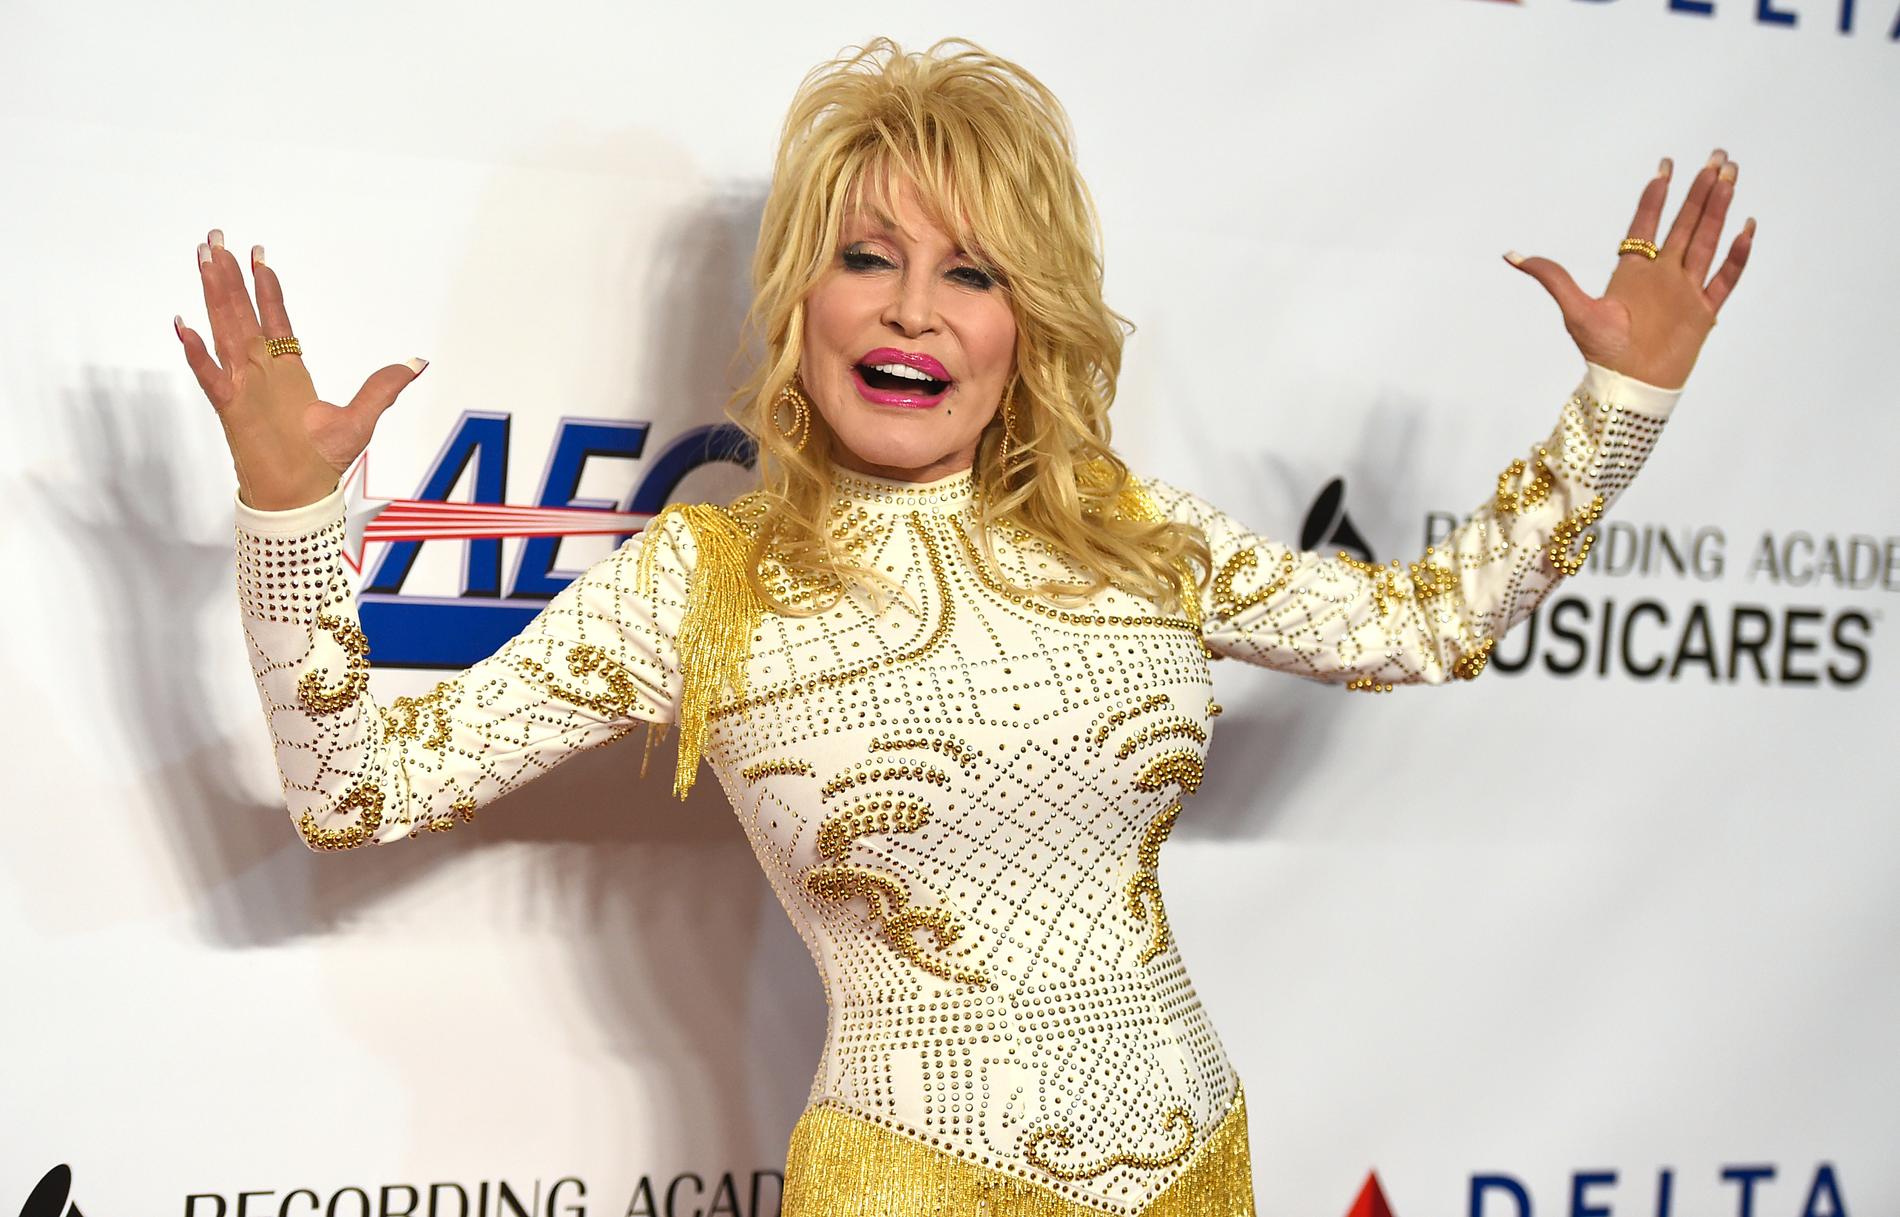 Dolly Parton anländer till en gala till hennes ära, hösten 2019. Sarah Smarshs essä ”Dolly Parton och kvinnorna som levde hennes låtar” är lojal mot Parton och hennes fans, skriver Jack Hildén i sin recension.